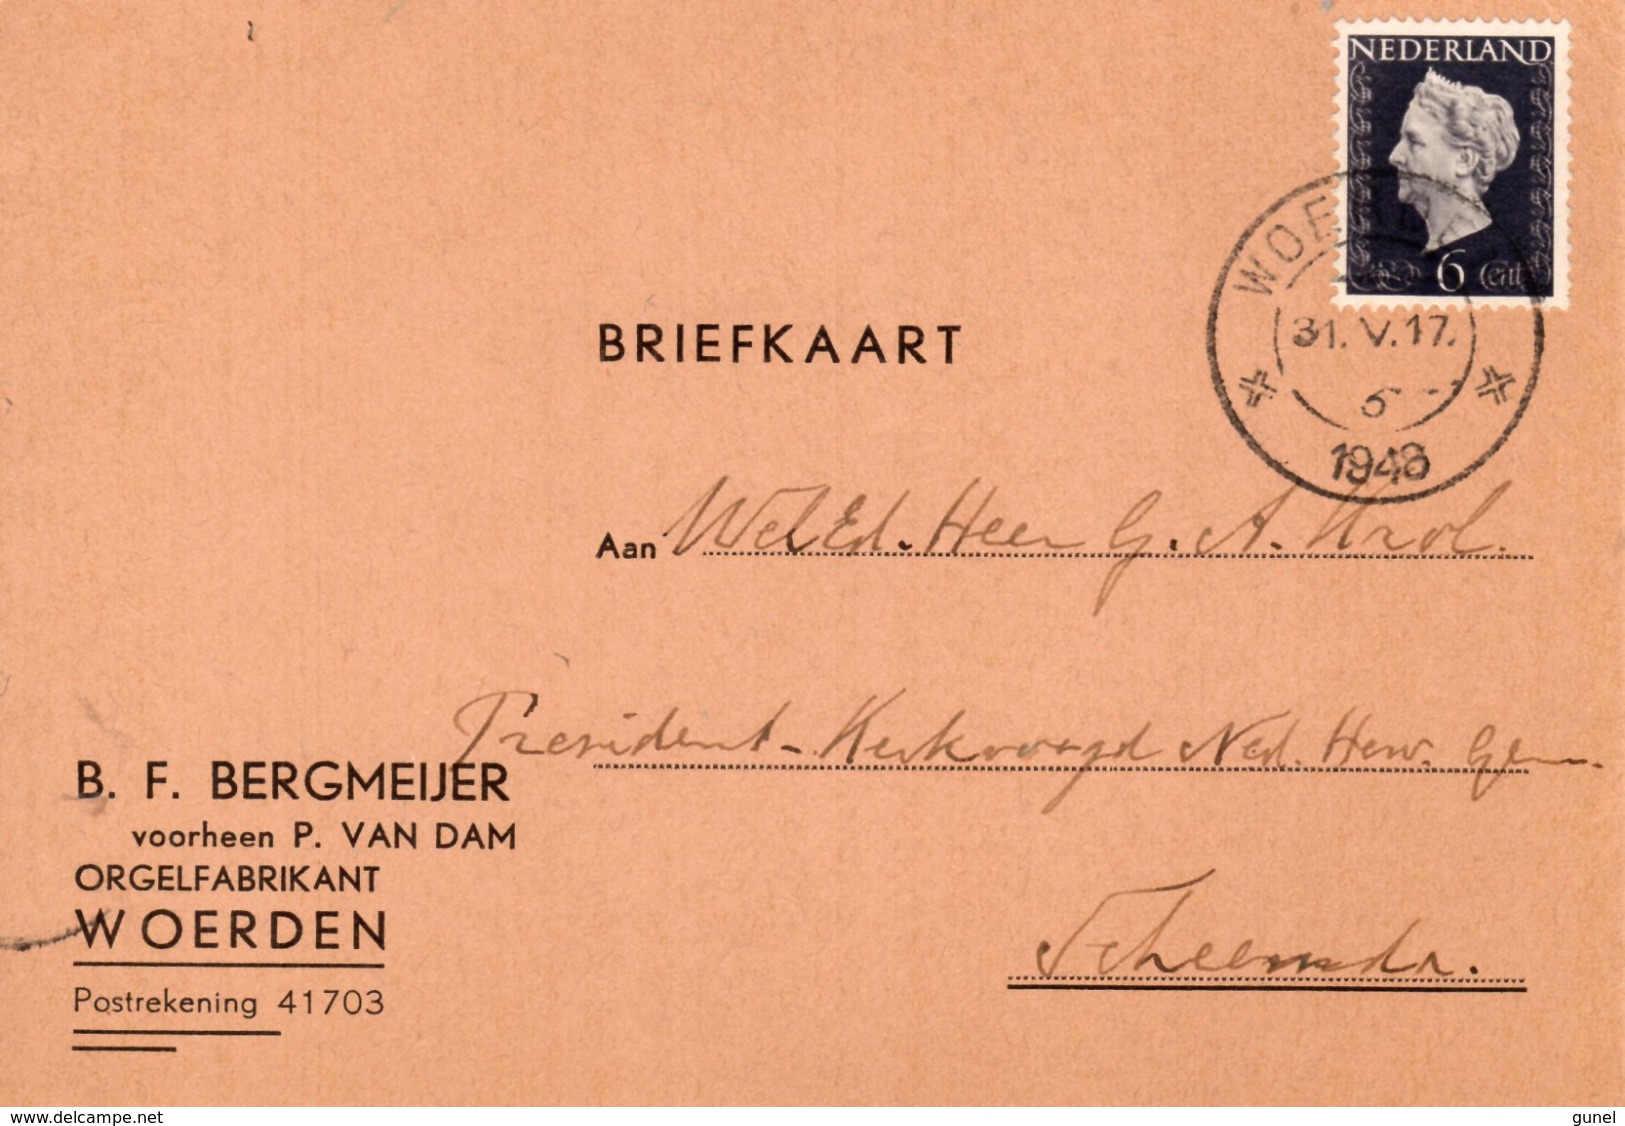 1943 Briefkaart Van Woerden Met Firmalogo (orgelfabrikant) Naar Scheemda - Poststempel